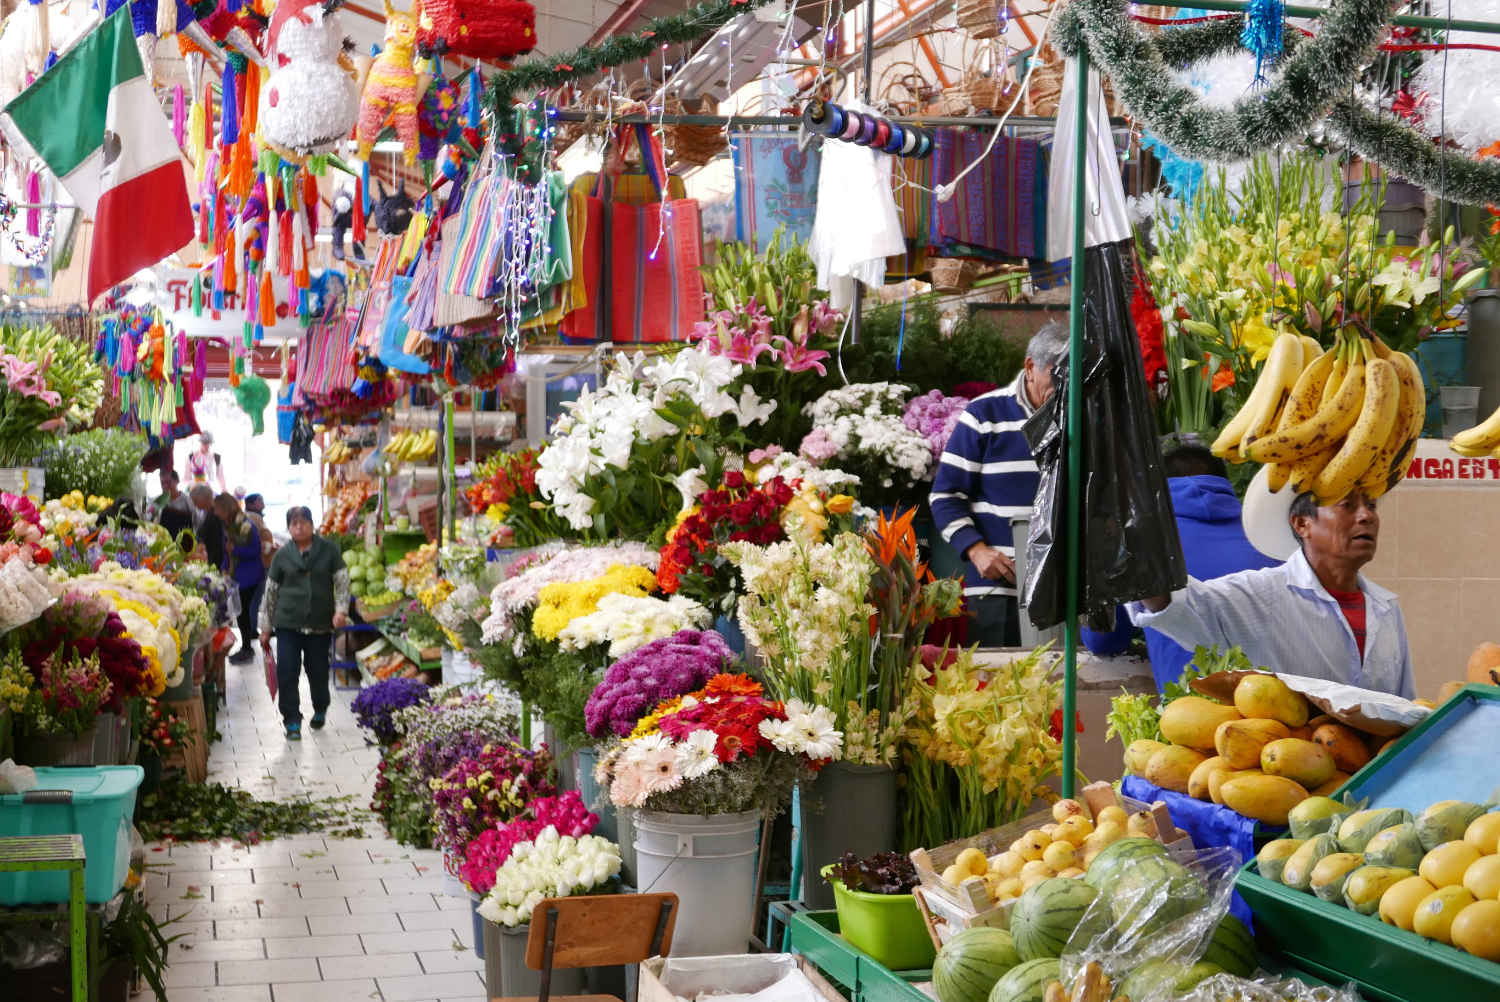 Market in San Miguel de Allende